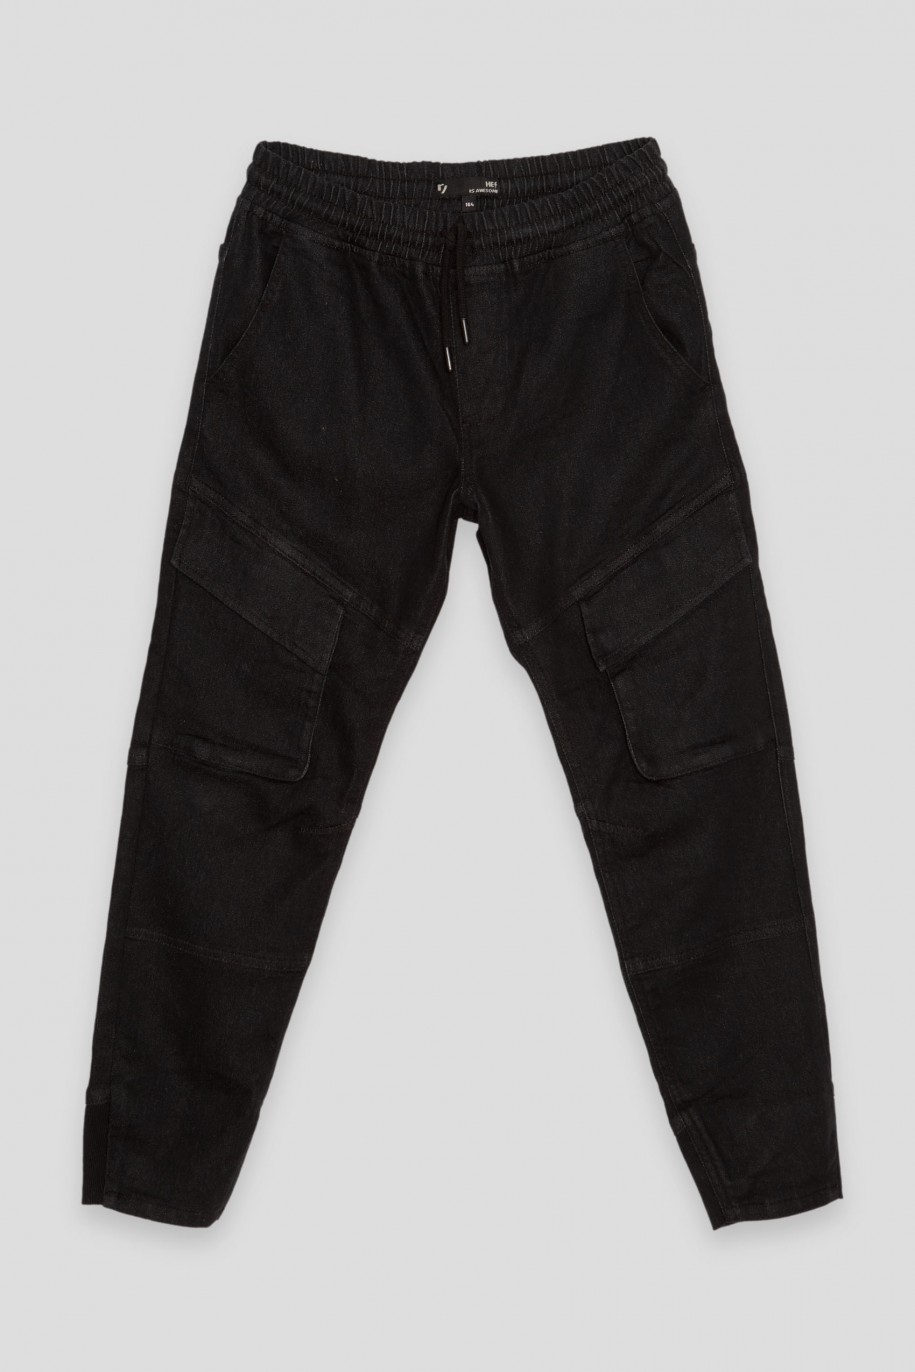 Czarne jeansy typu jogger z pojemnymi kieszeniami - 38379